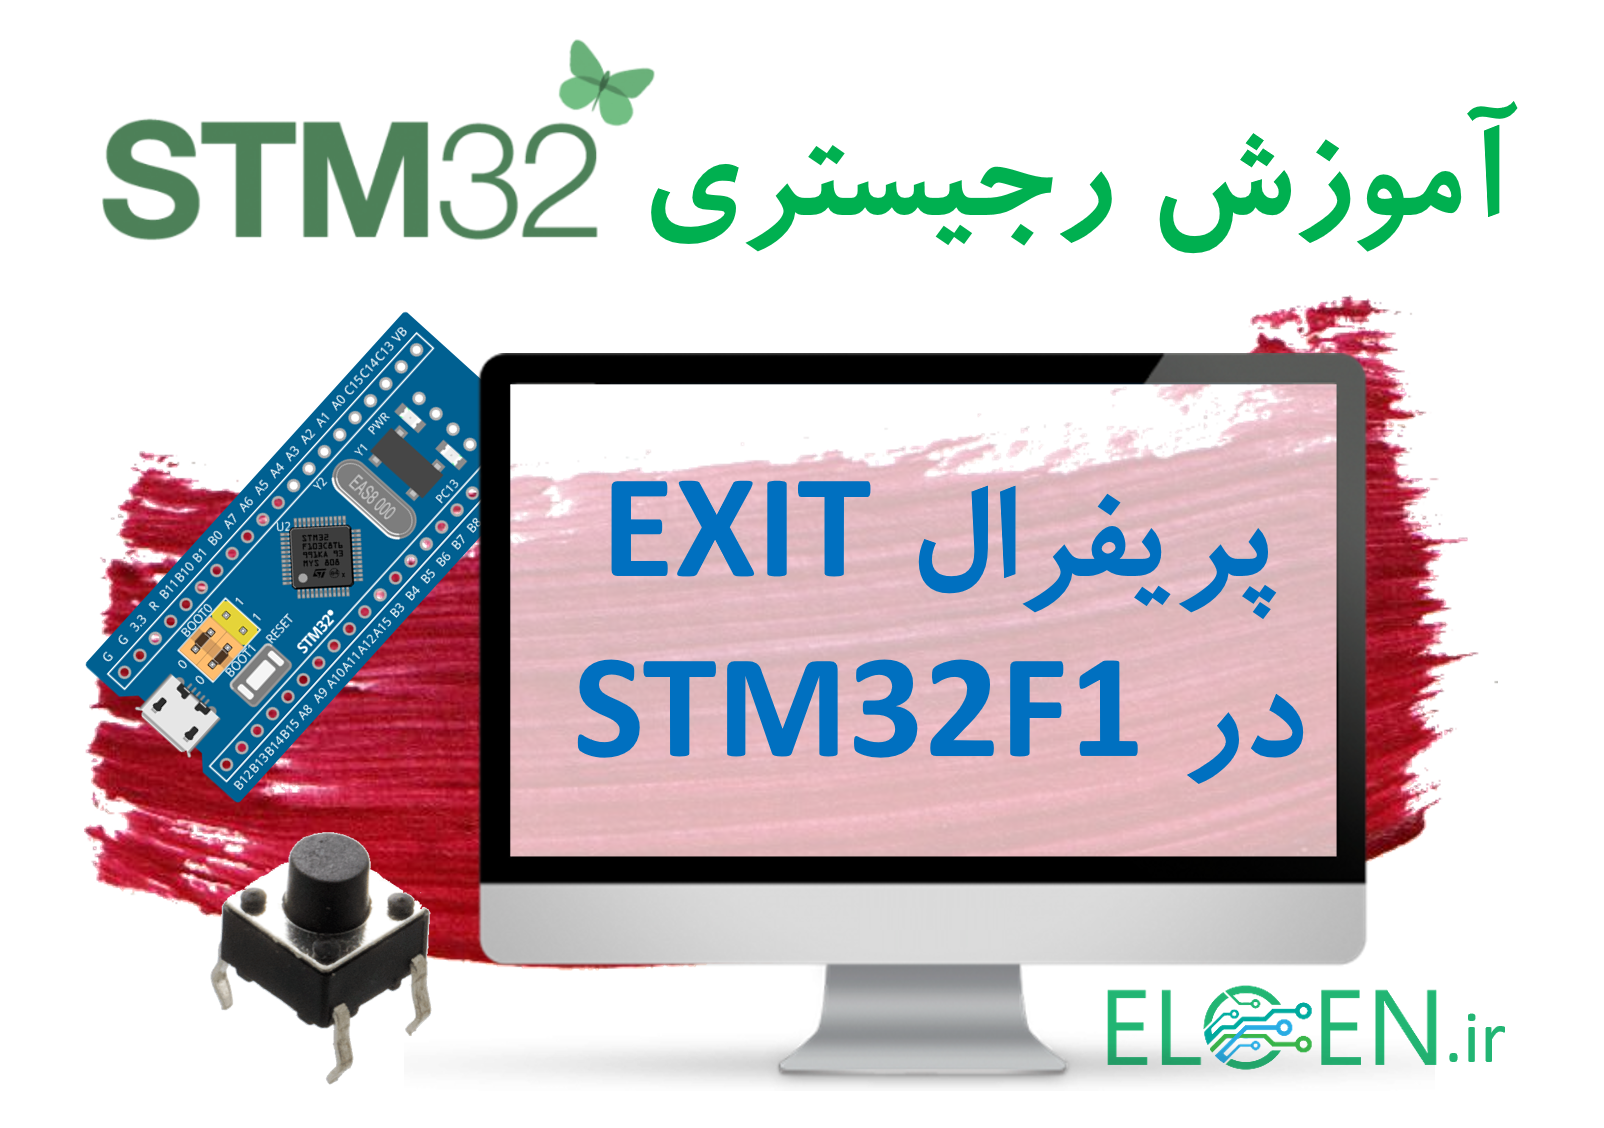 آموزش STM32 : پریفرال EXTI در میکروکنترلر STM32F103C8 برای مدیریت اینتراپت های خارجی